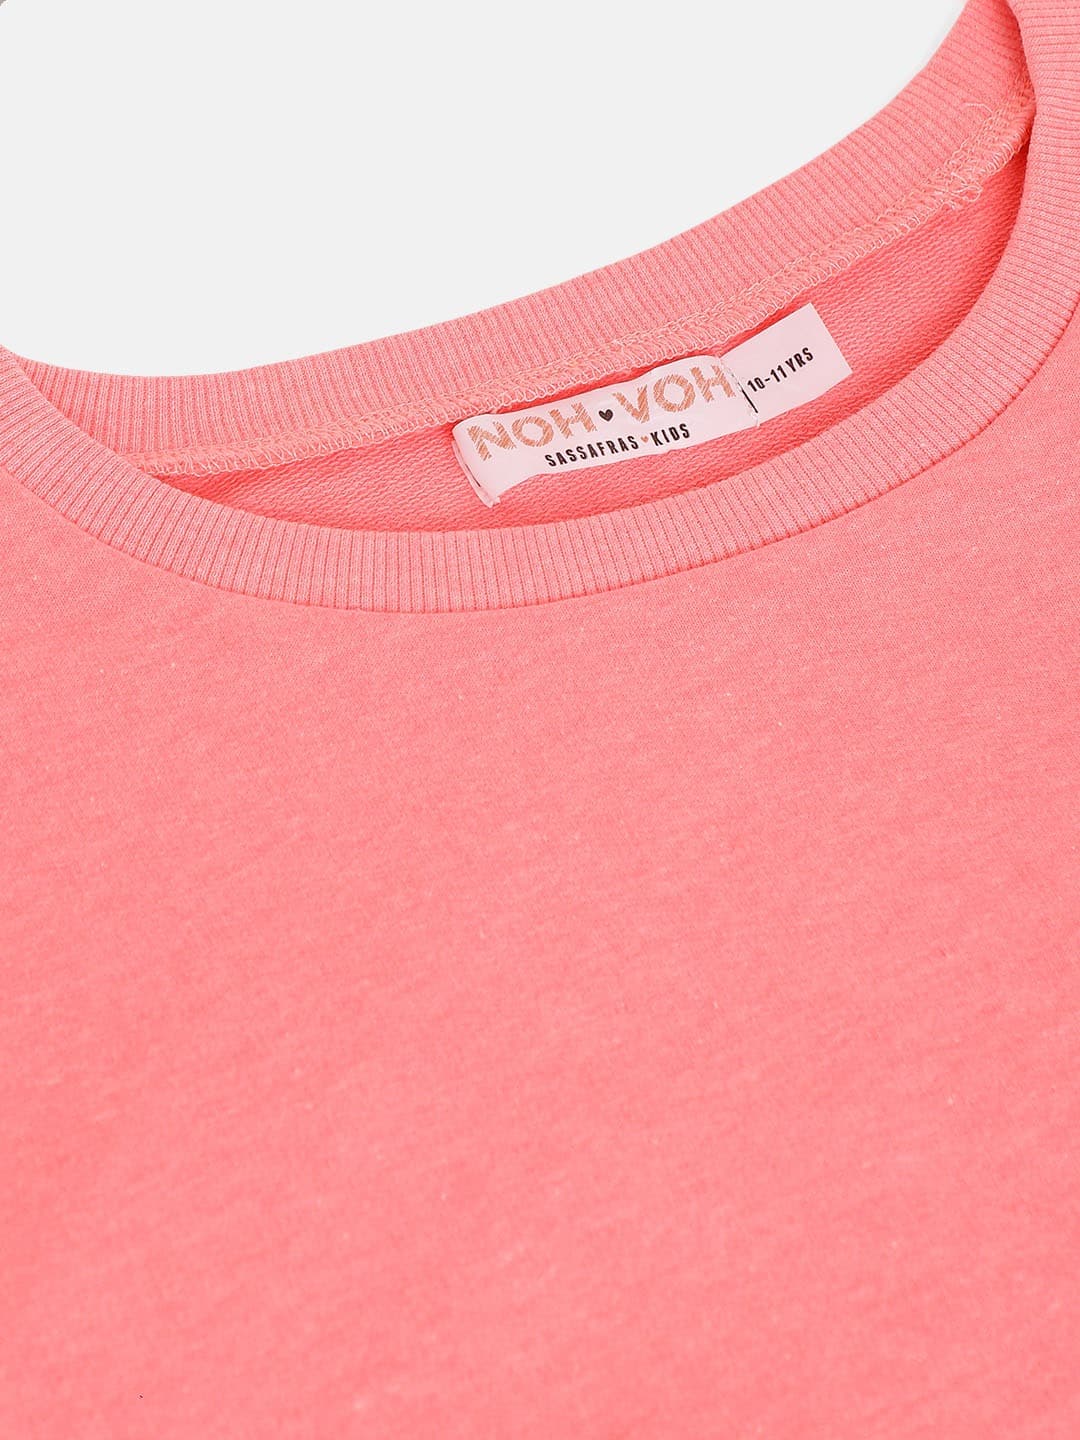 Girls Neon Pink Terry Sweatshirt - Lyush Kids